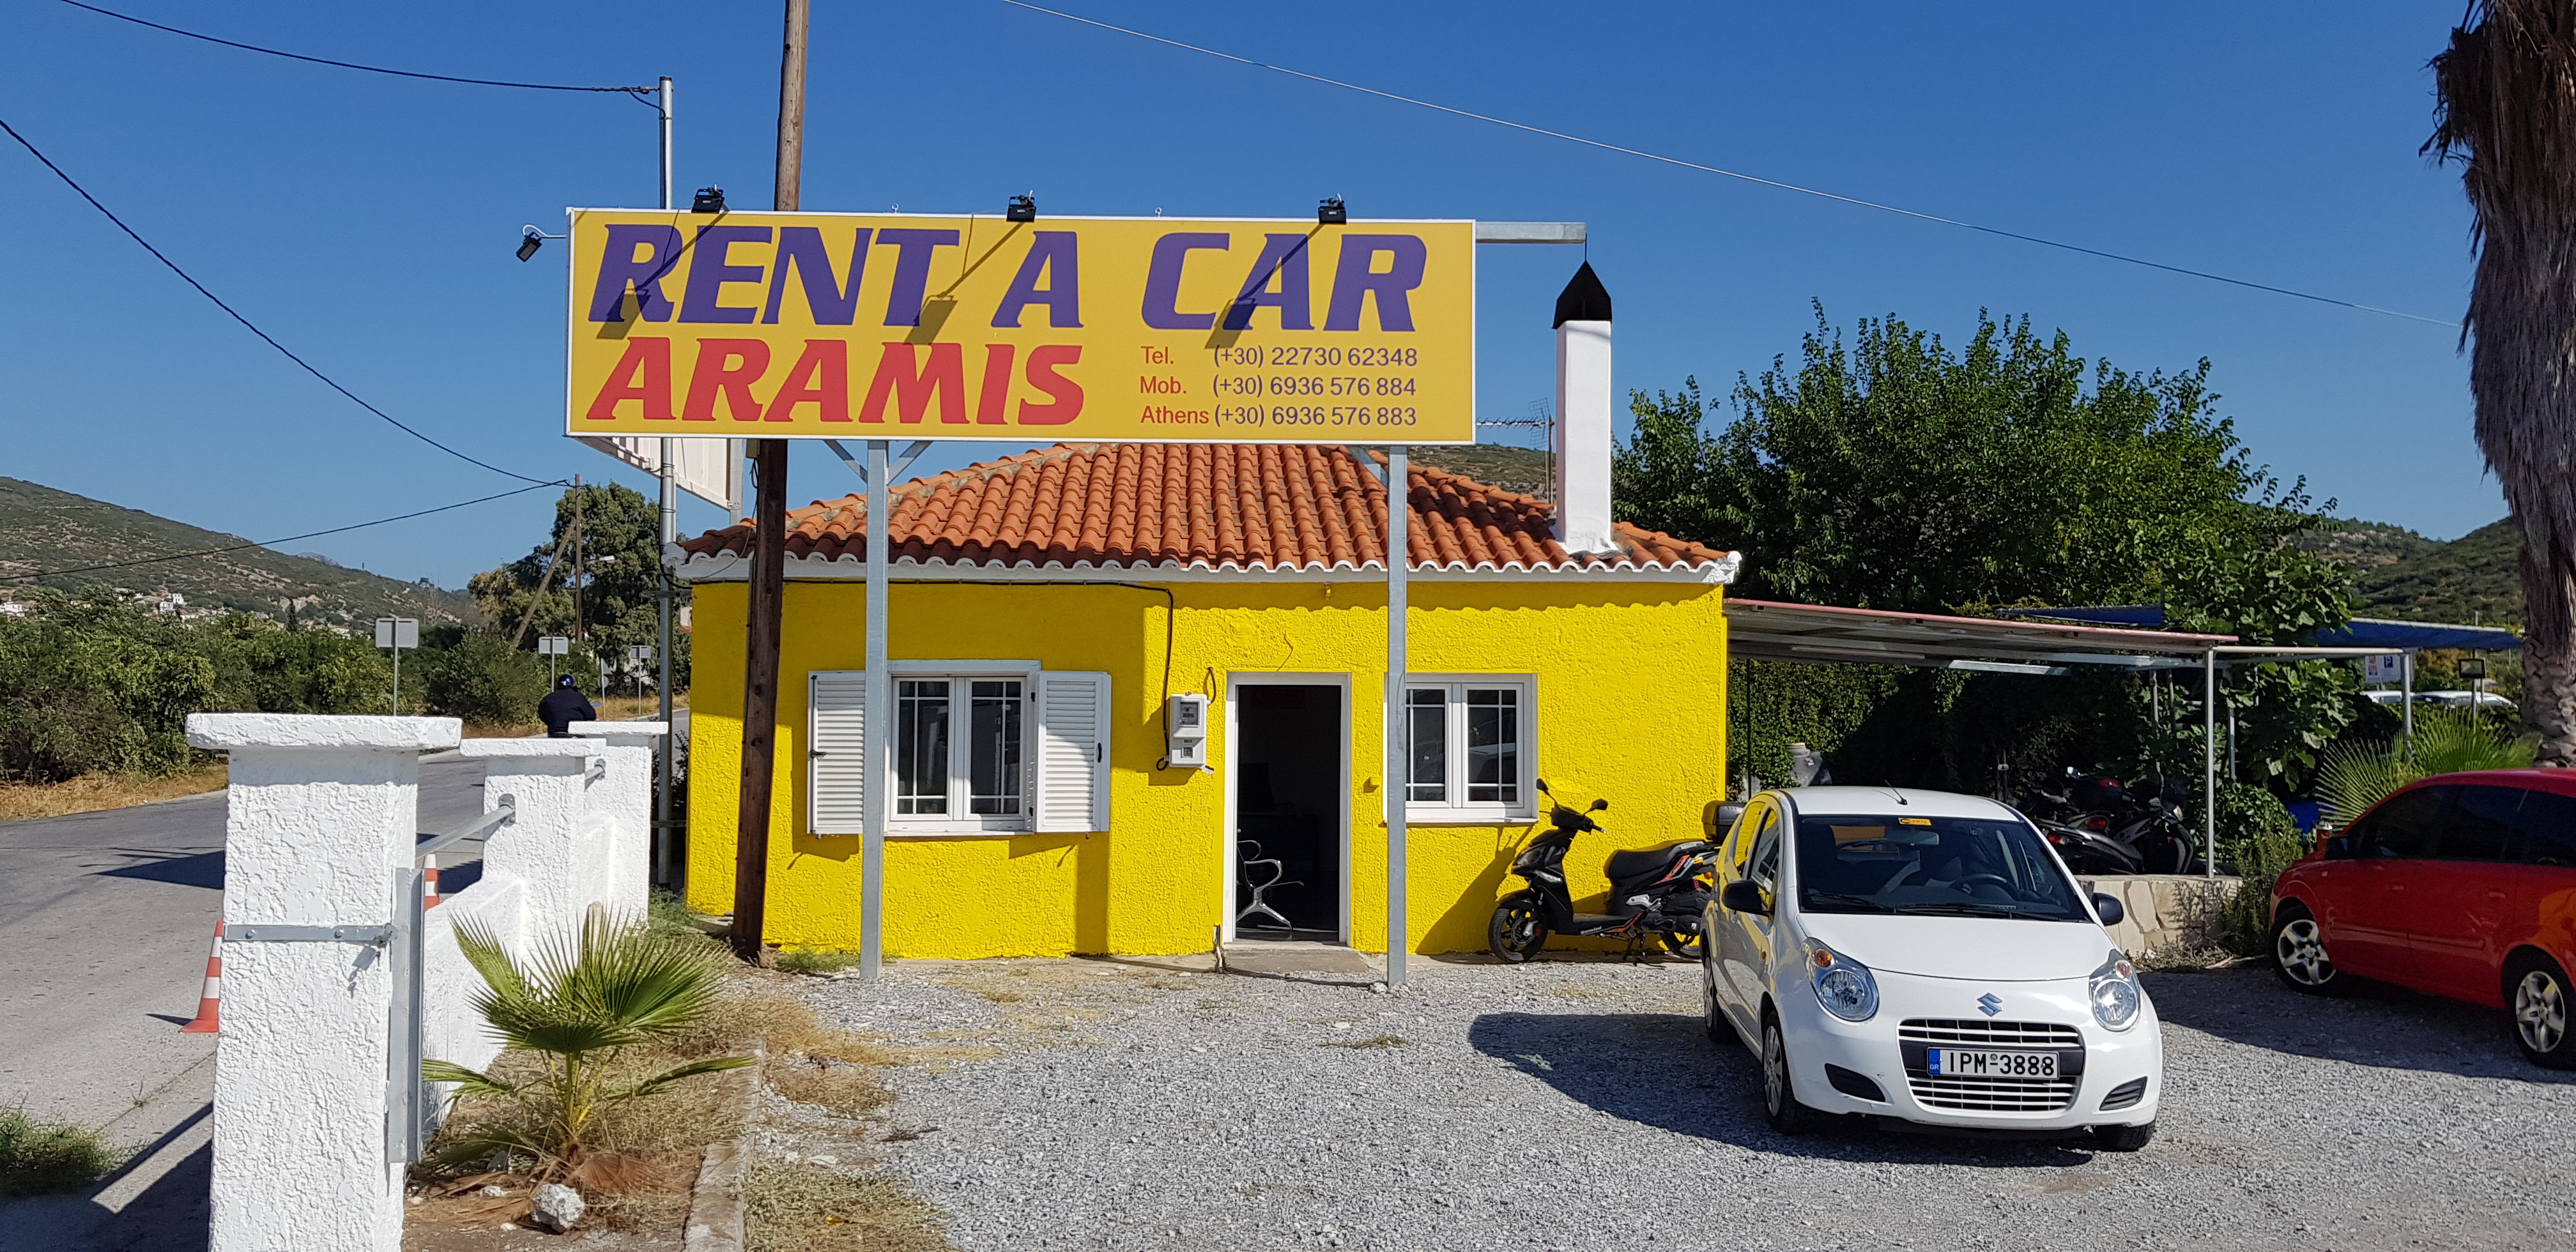 Aramis Airport car rental office